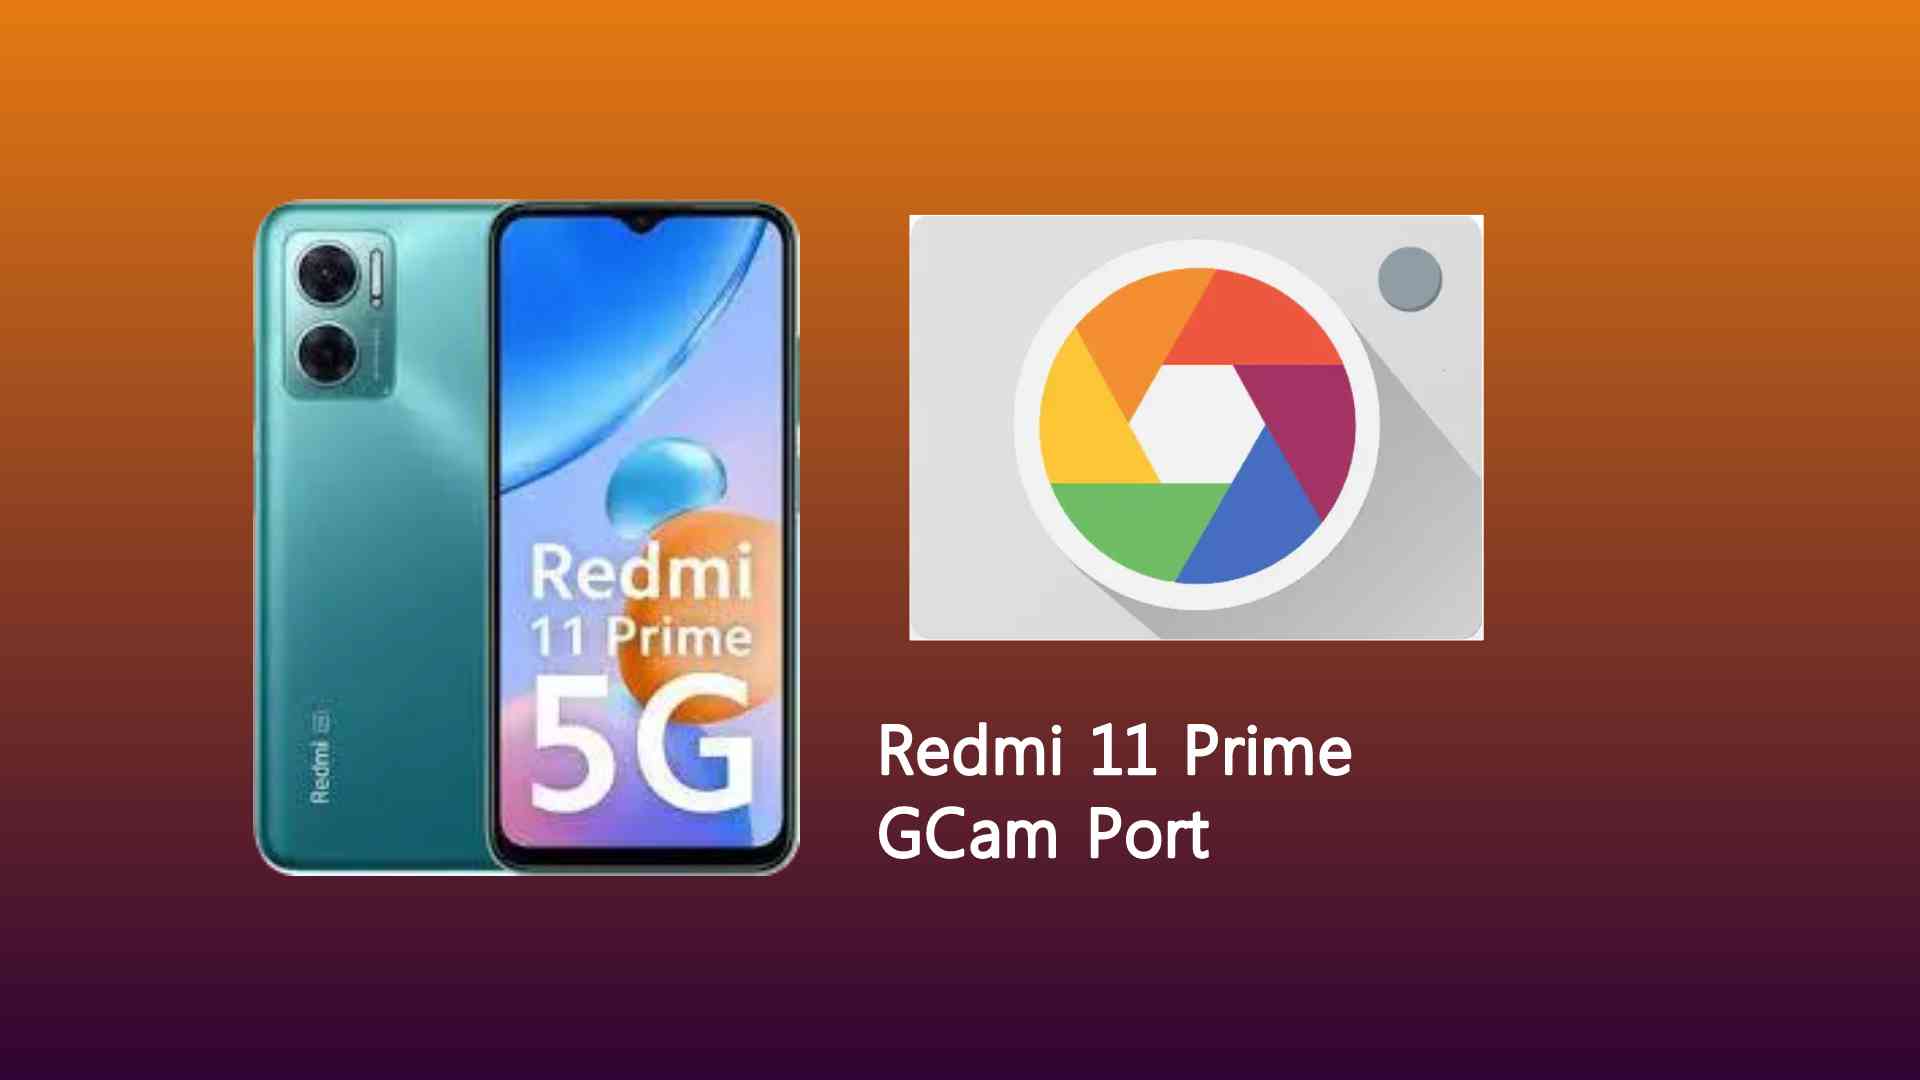 Redmi 11 Prime GCam Port